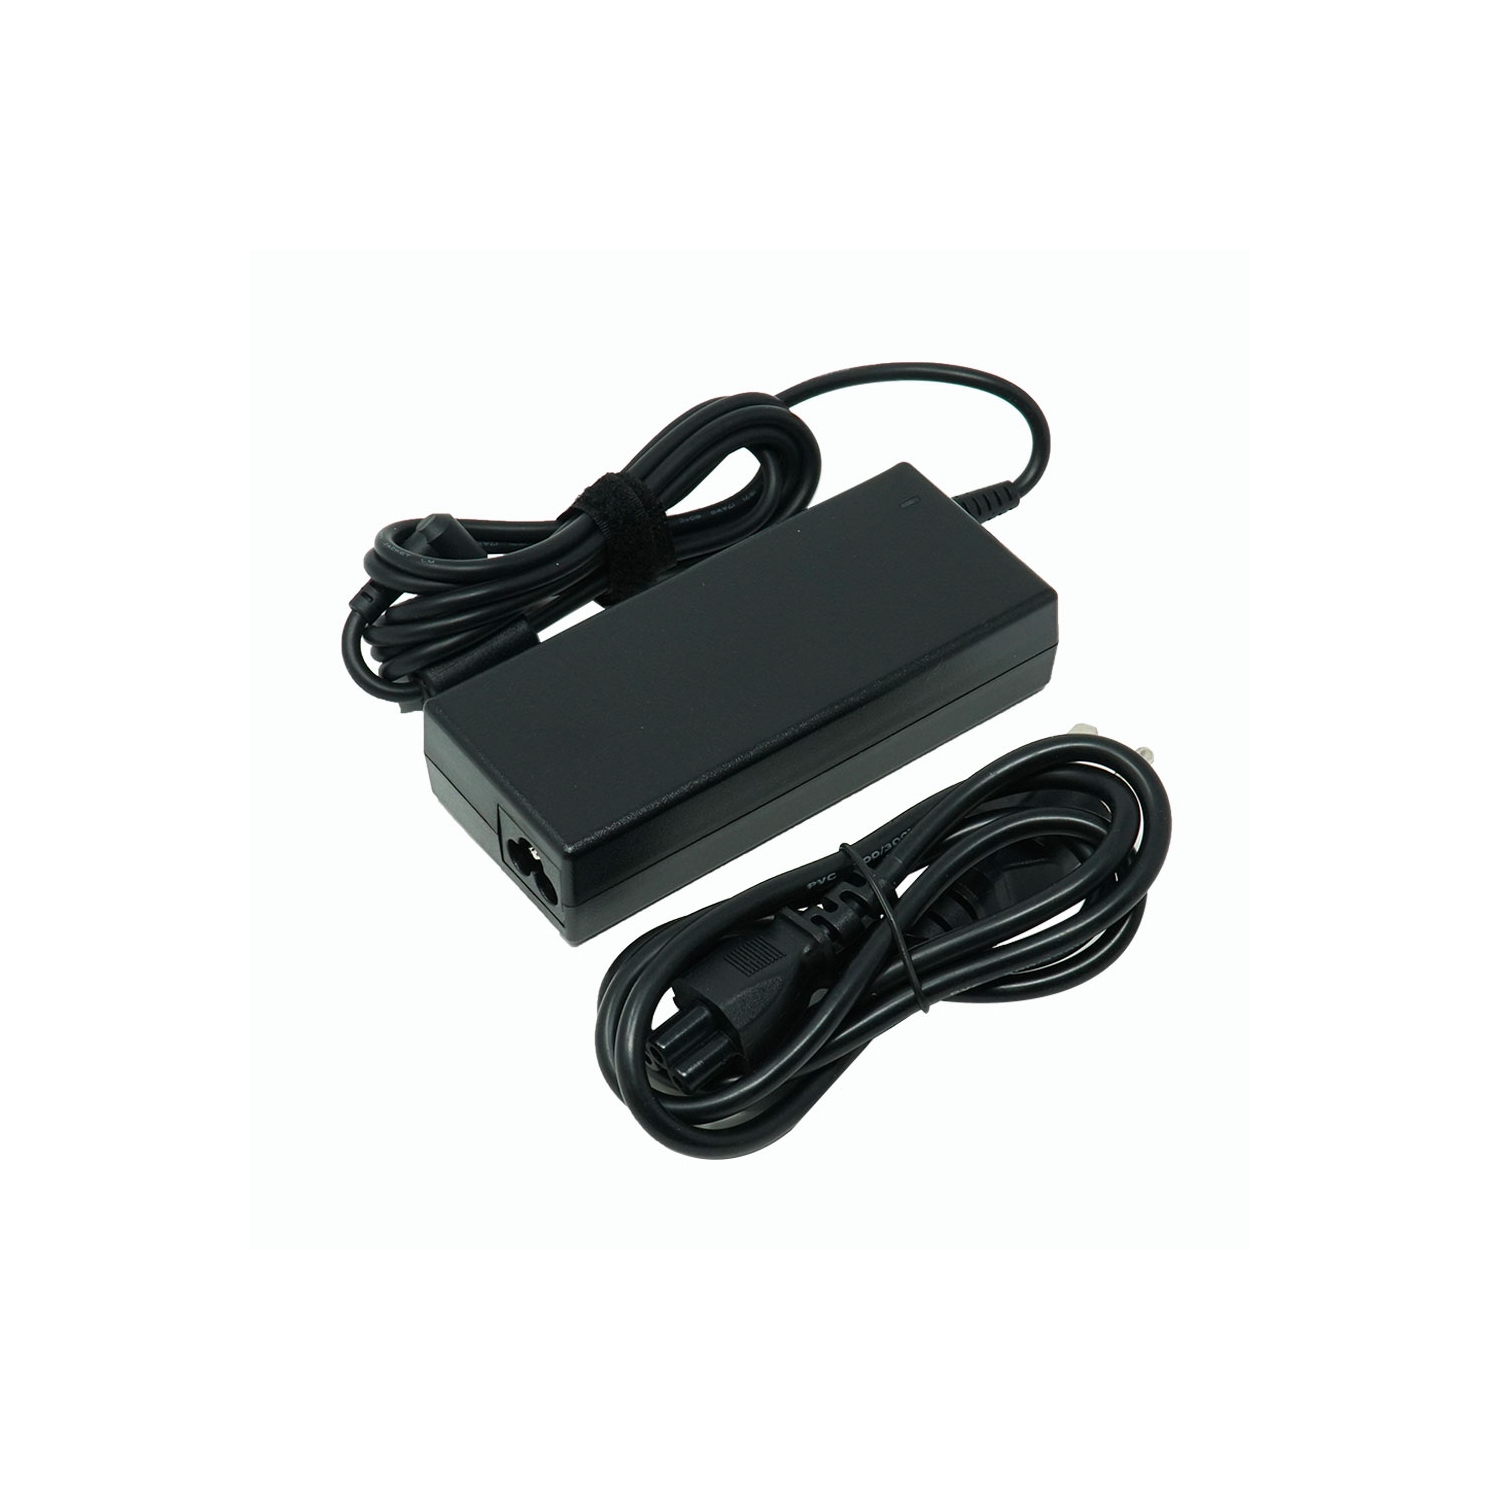 Dr. Battery - Notebook Adapter for LG LW60 / LW65 / P1 / W1 / QND1ACYZZZTA43 / QND1ACYZZZTA60 / REV A1 - Free Shipping